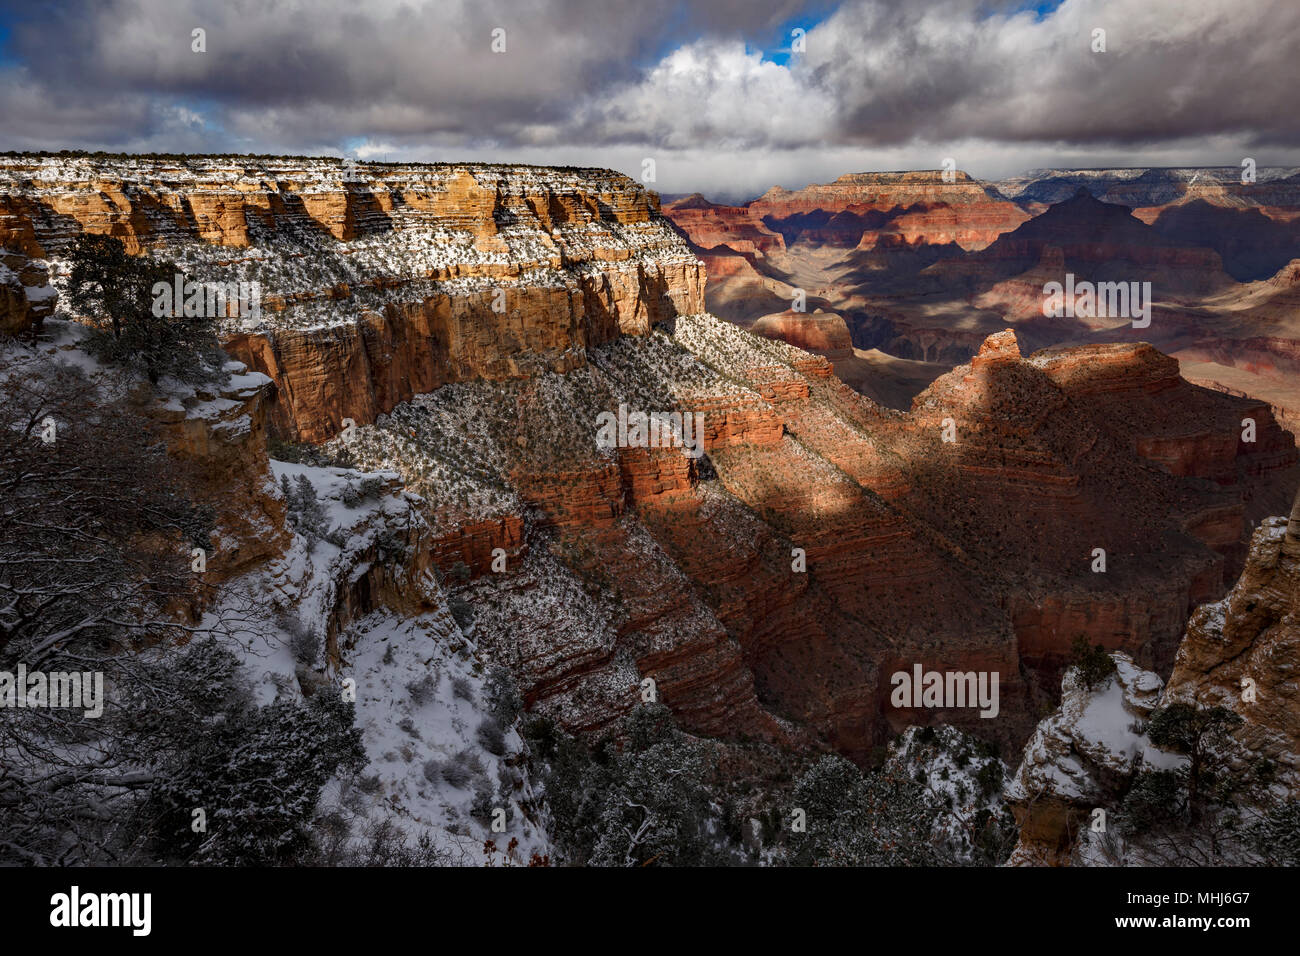 Coperte di neve bluffs e canyon, da Rim Trail vicino al villaggio, il Parco Nazionale del Grand Canyon, Arizona USA Foto Stock